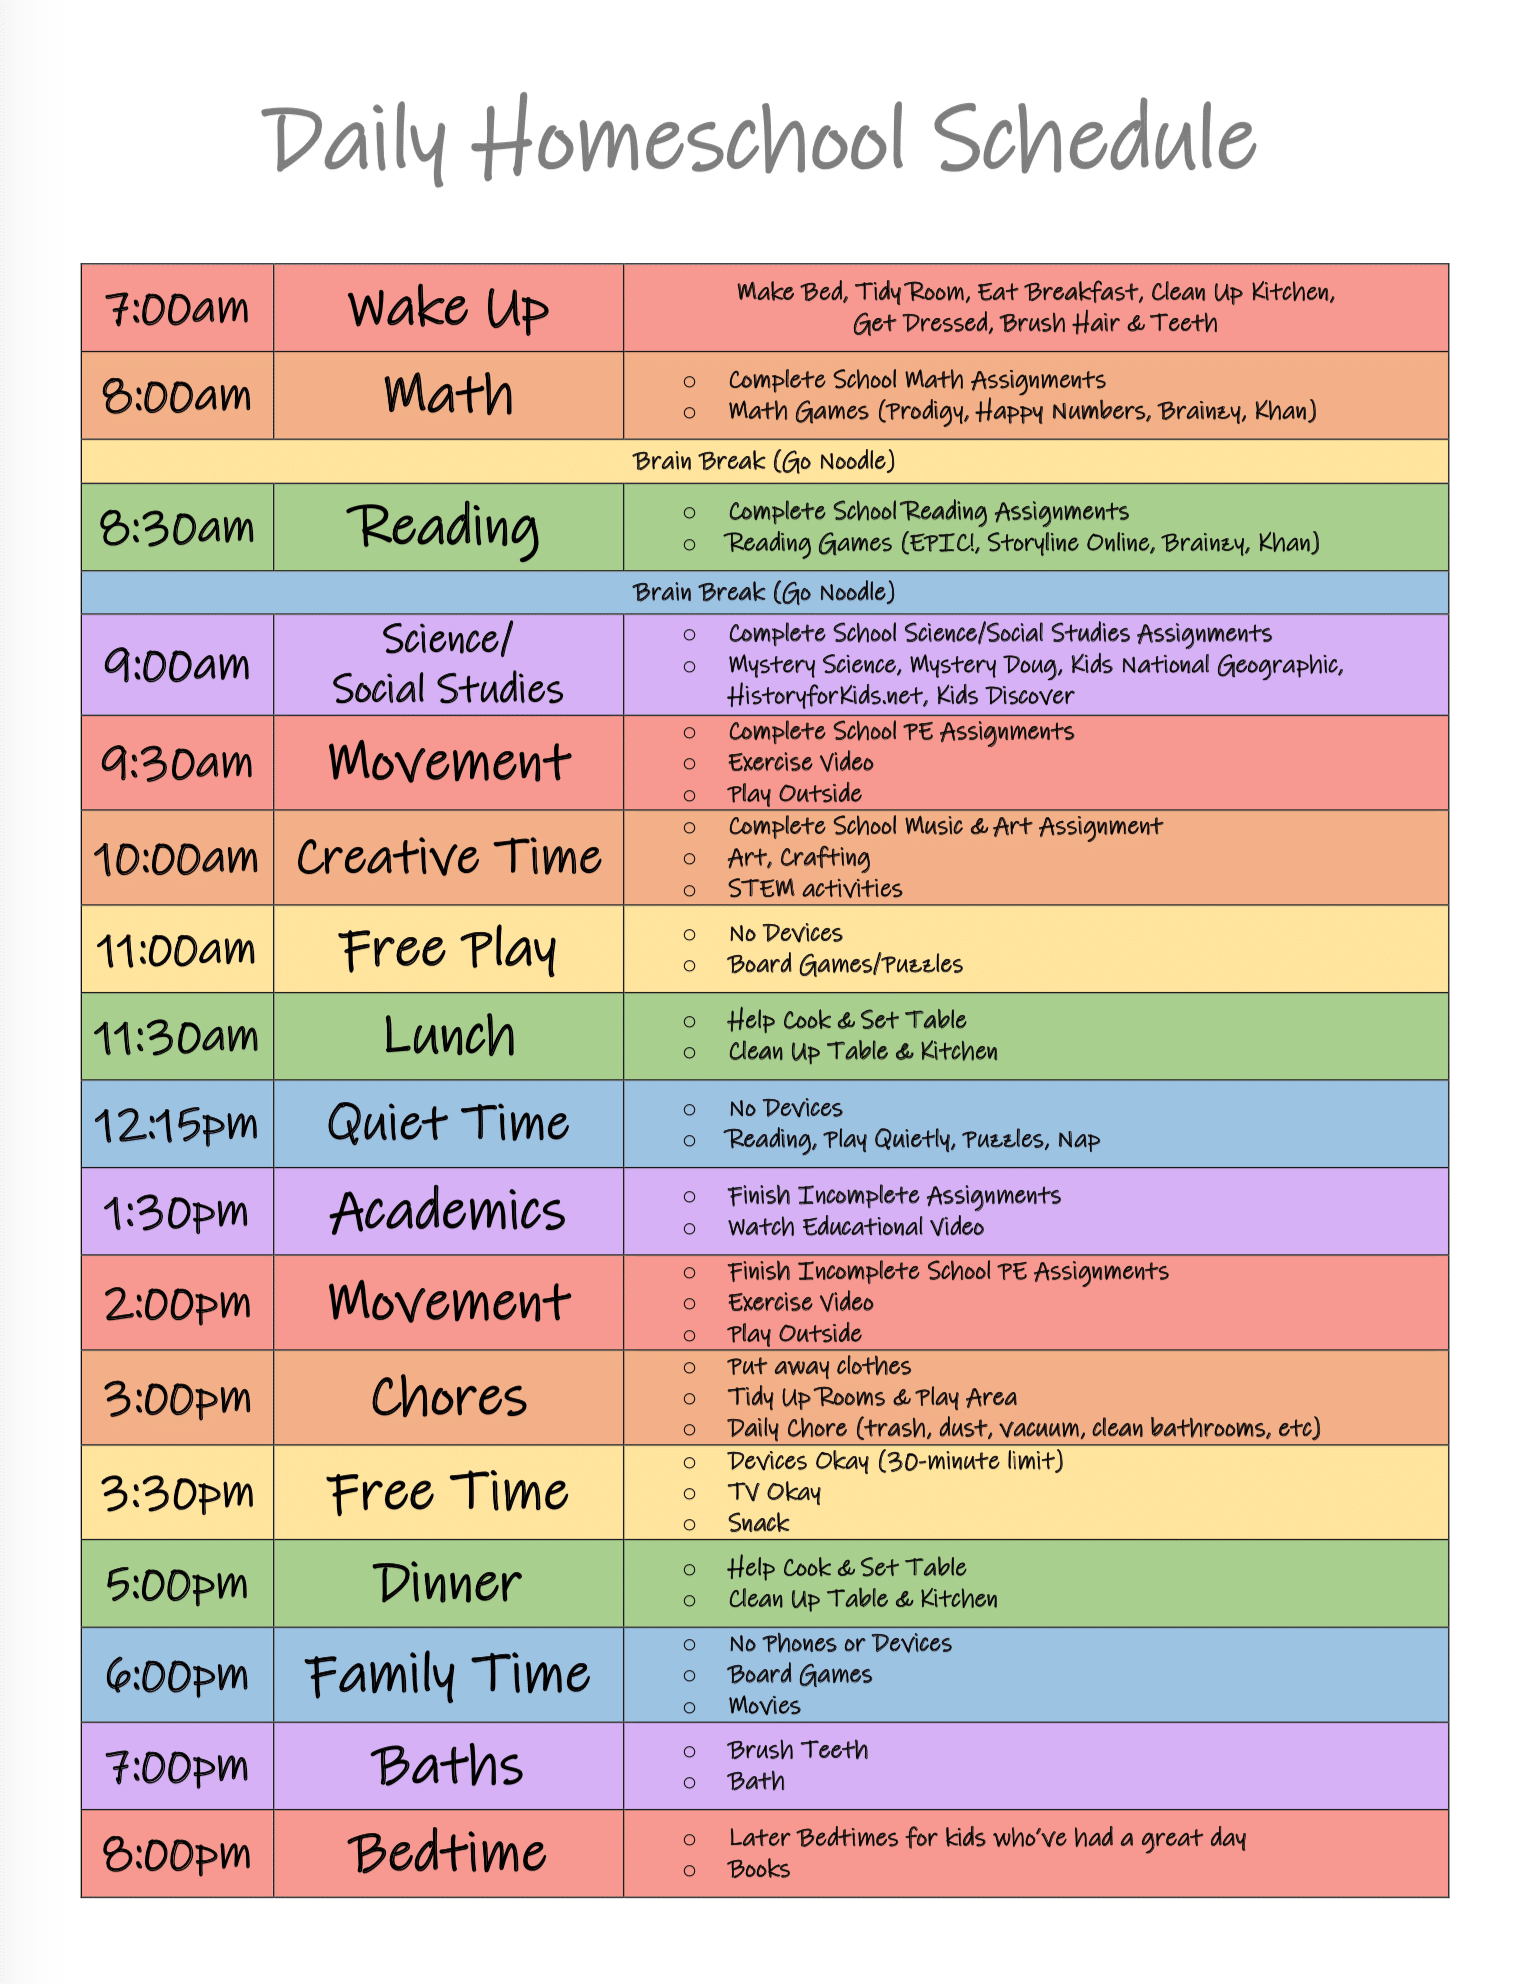 Homeschooling Daily Schedule